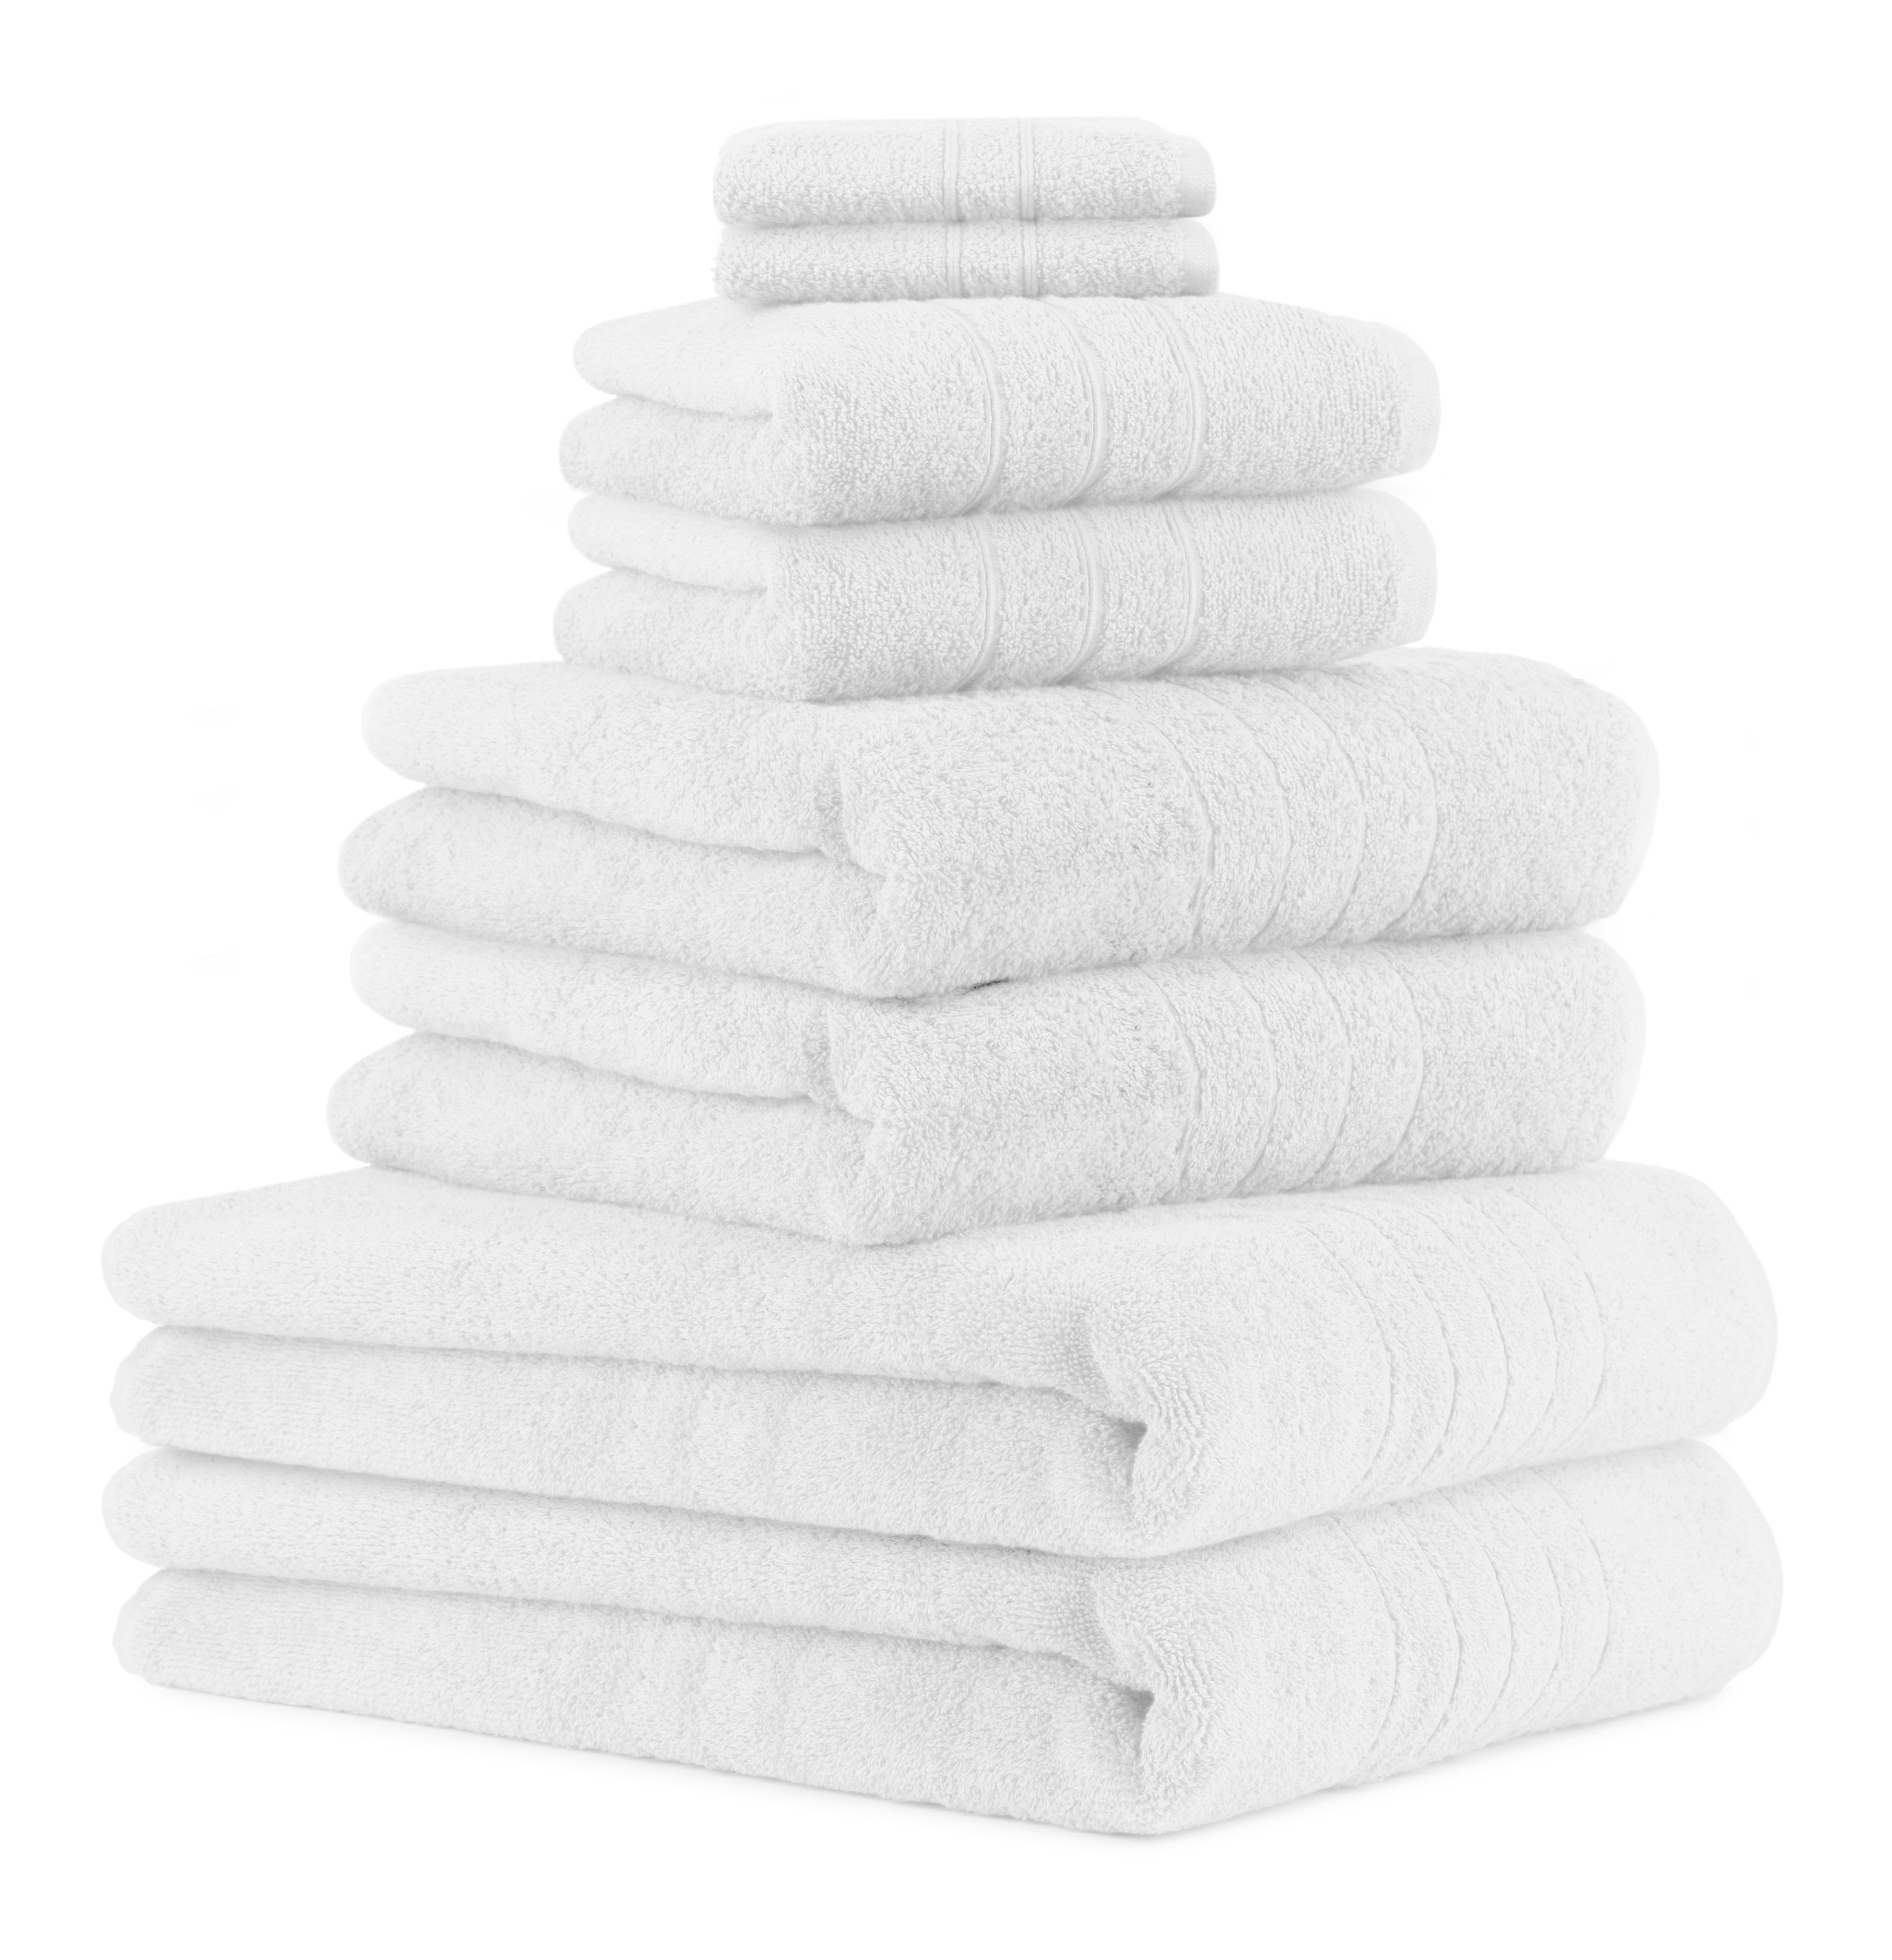 Deluxe Handtuch Baumwolle 2 (8-tlg) Baumwolle, 8-TLG 100% Handtücher weiß Badetücher Handtuch-Set Duschtücher 2 Set Betz Seiftücher, 2 2 100%